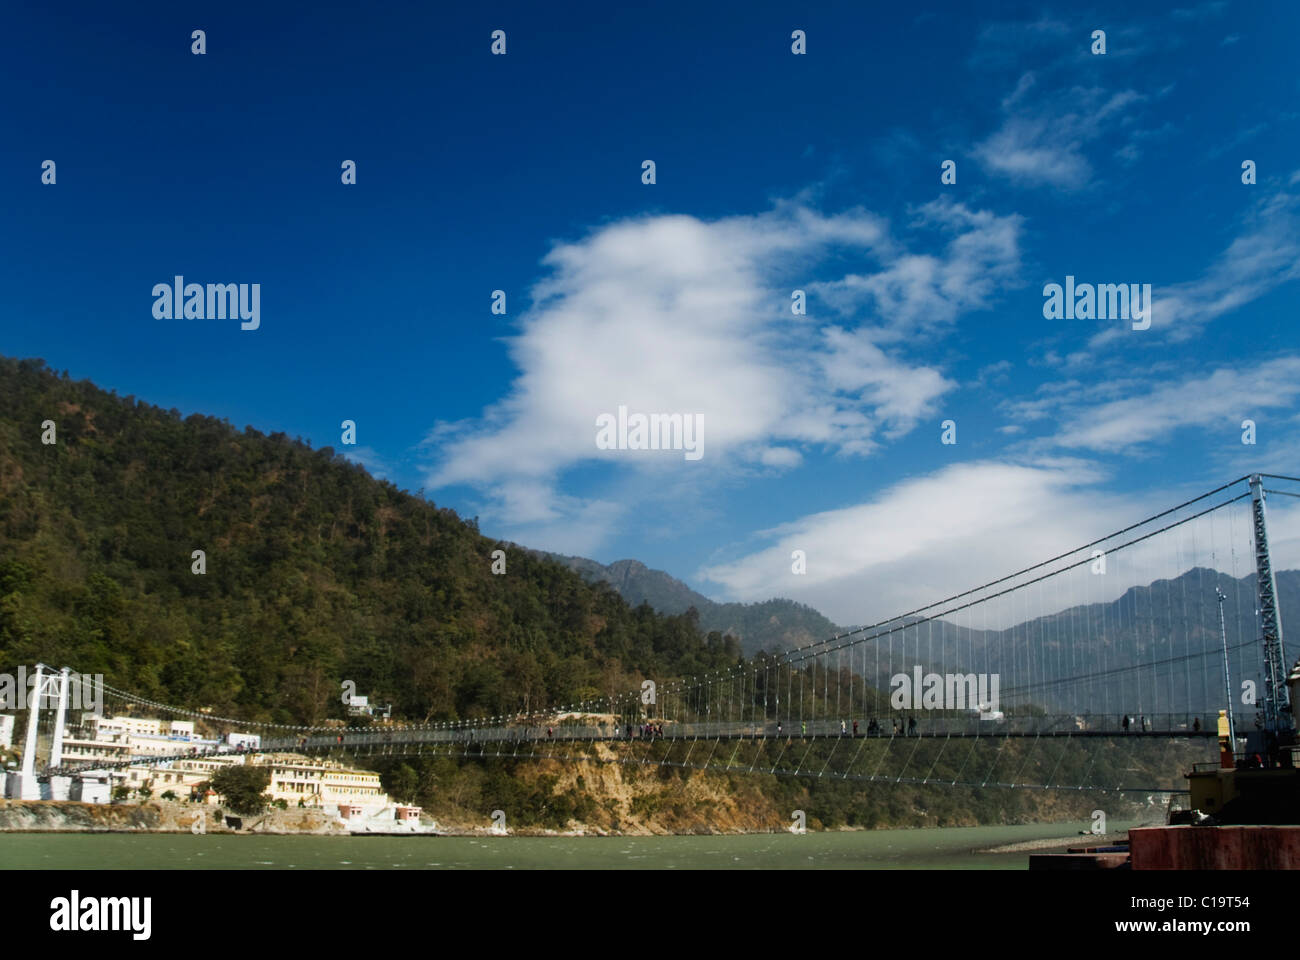 Suspension Bridge à travers une rivière, Ram Jhula, Gange, Rishikesh, Inde, Uttarakhand Banque D'Images